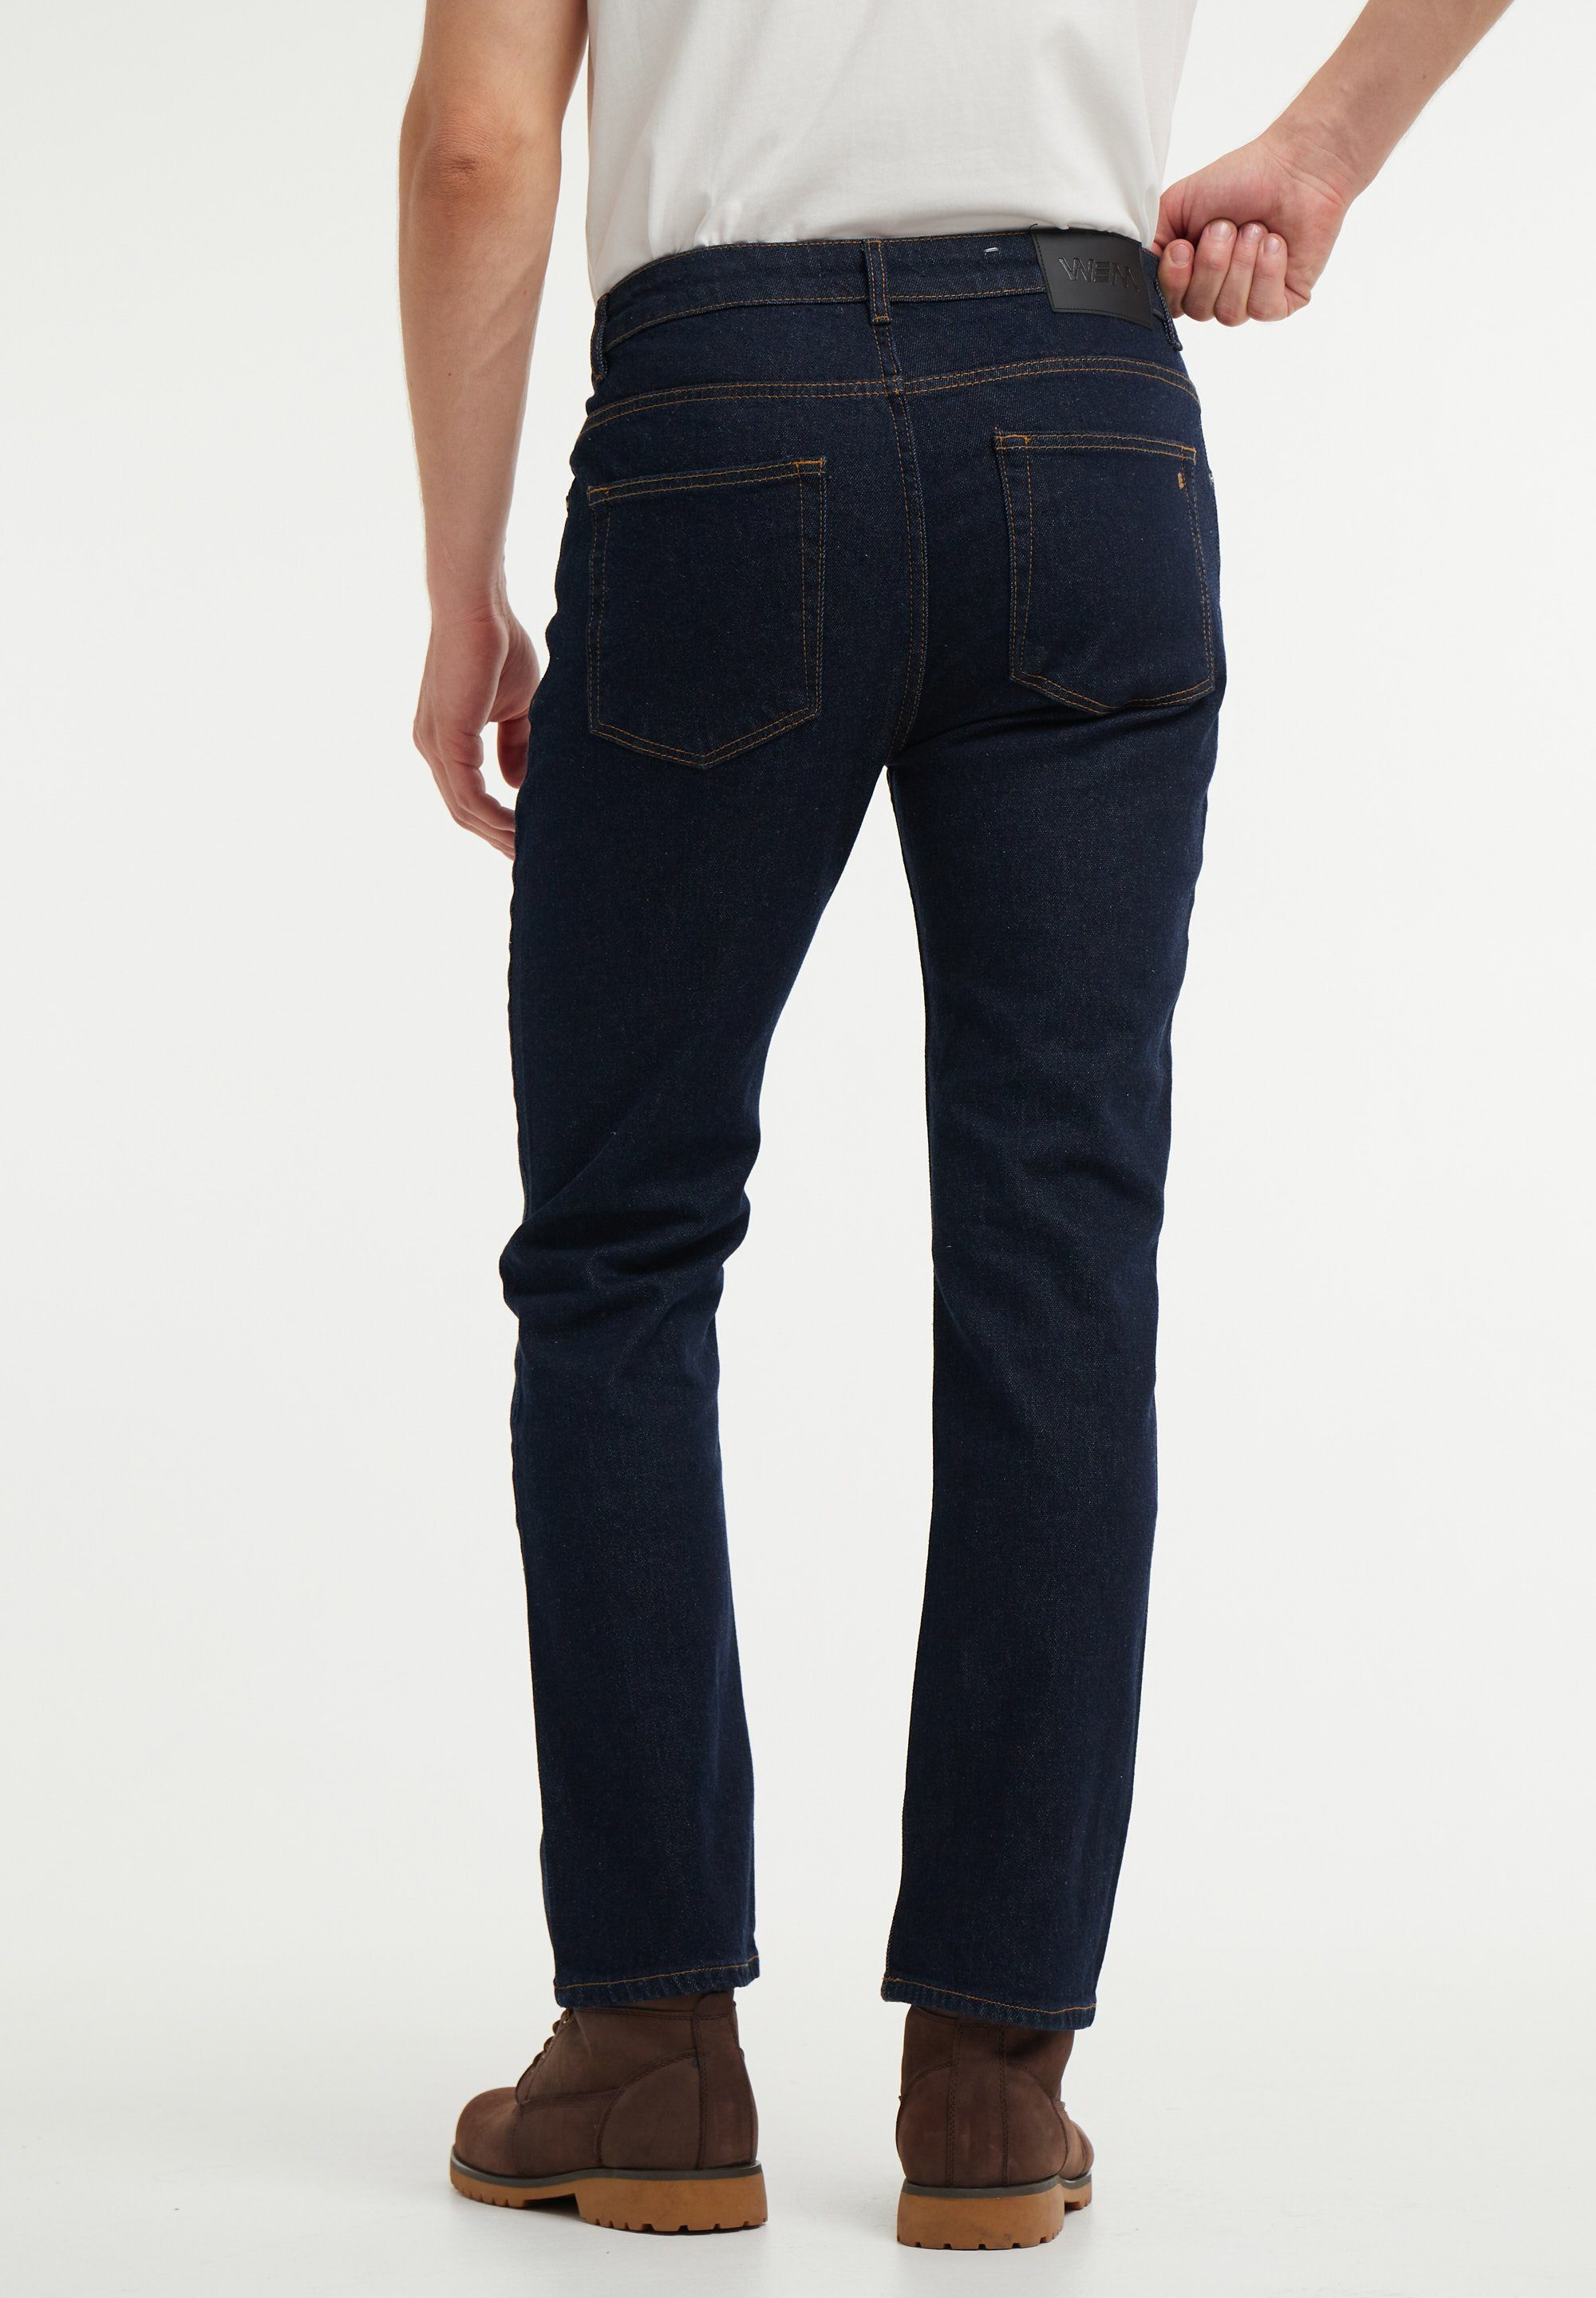 wem Straight-Jeans gerade Mittlere Magnus Länge denim rinse Passform Bundhöhe: - Fit gesamte die über Reg